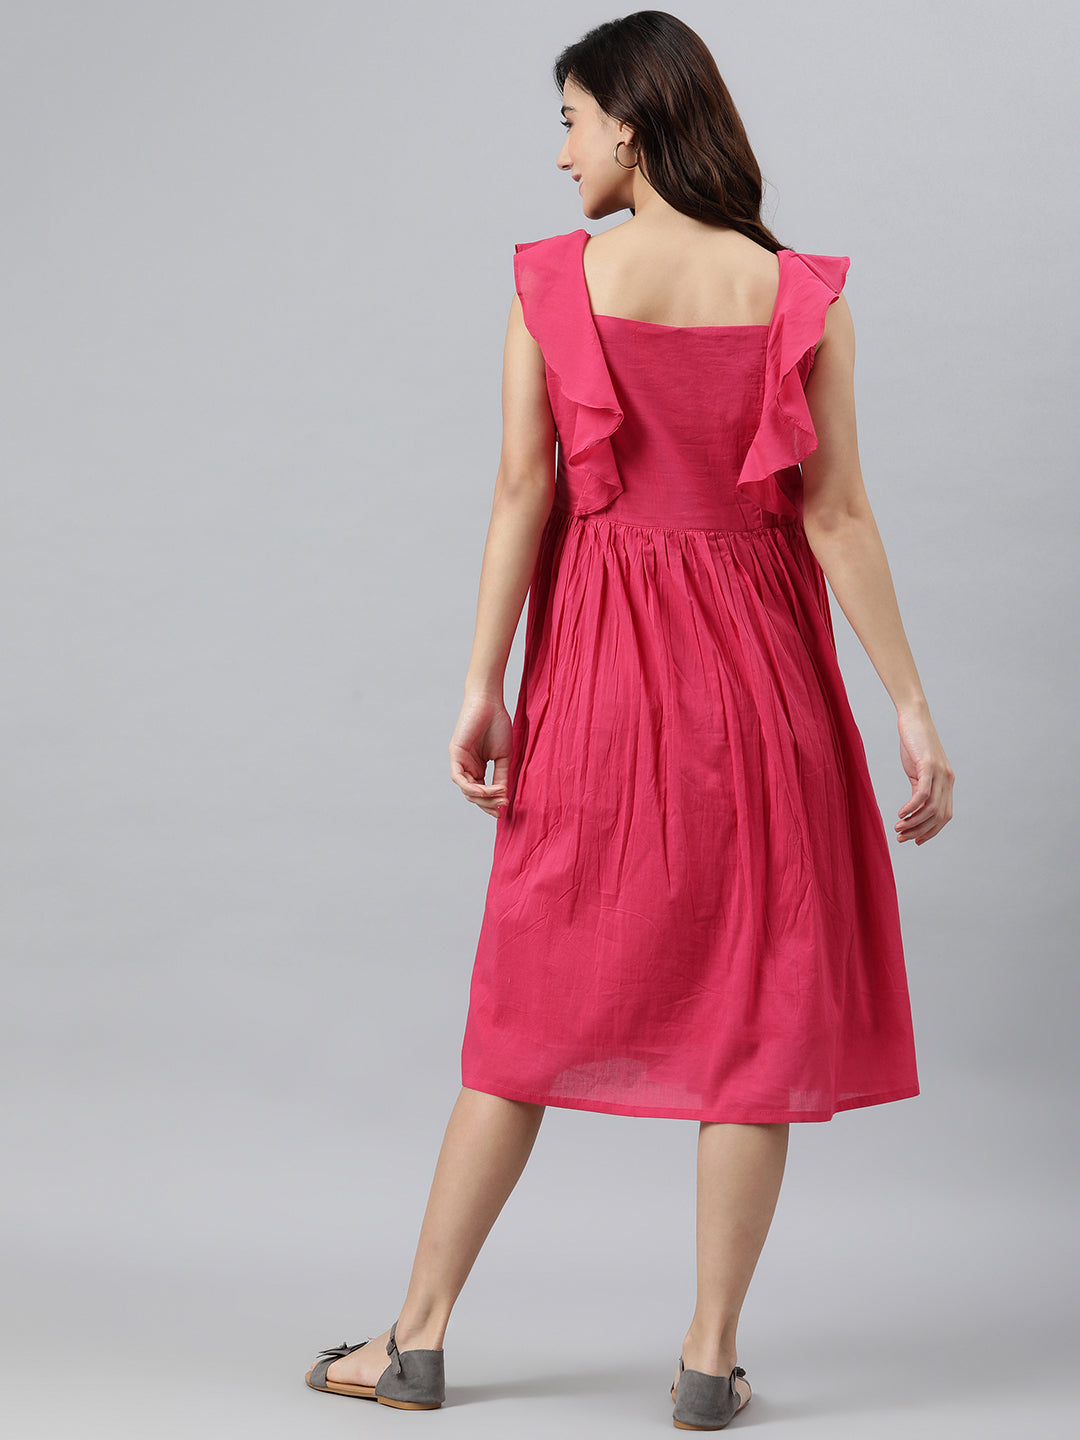 Women's Solid Pink Cotton Dress - Janasya USA